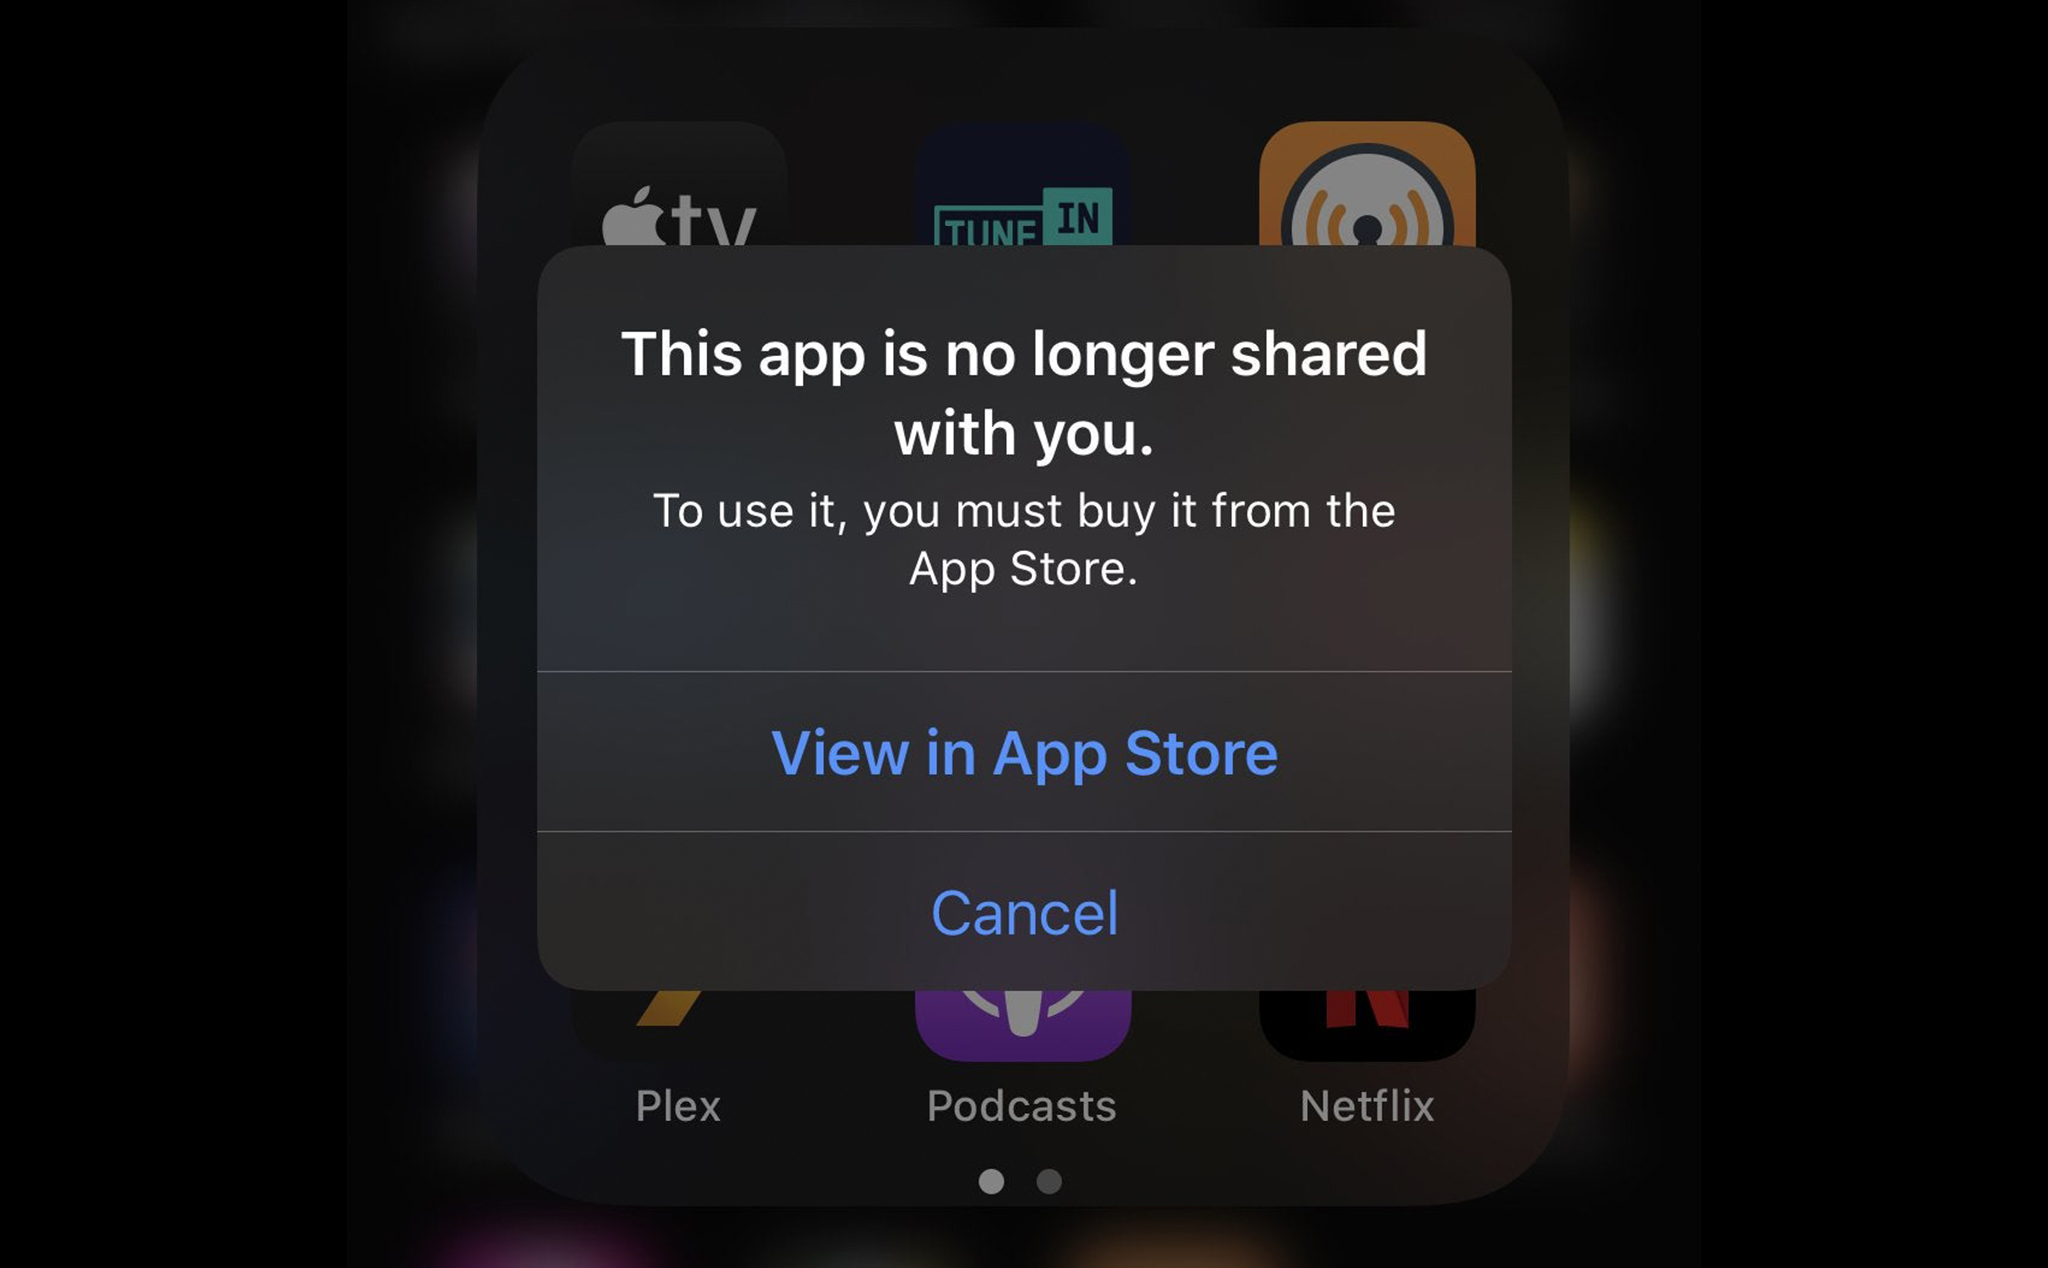 Anh em có gặp lỗi không vào được ứng dụng trên iOS 13.5 và 13.4.1?